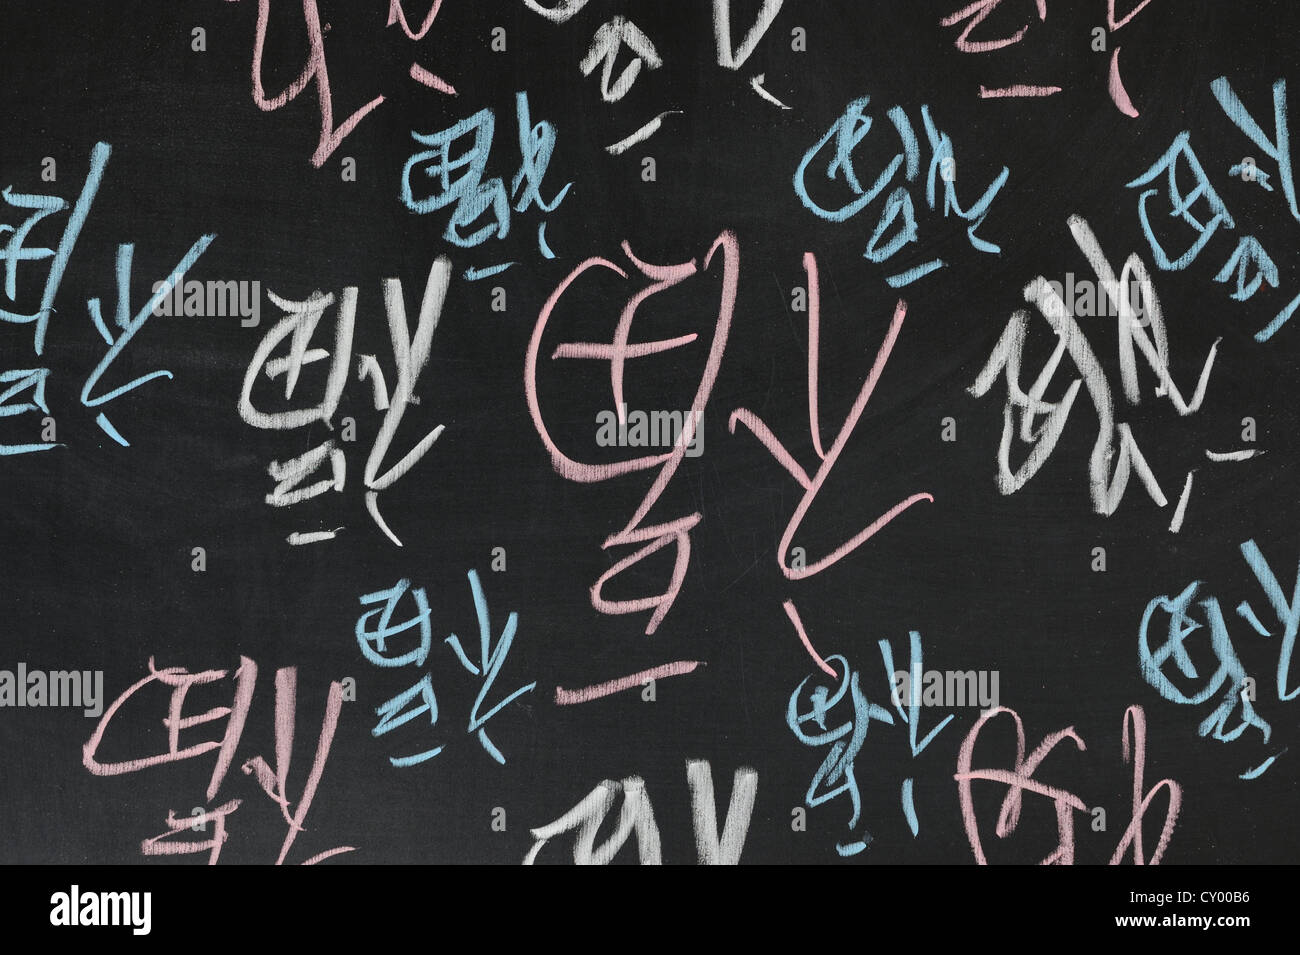 Tafel-Zeichnung - Gruppe der invertierten chinesische Wort "Fu", was bedeutet "Glück in China angekommen" Stockfoto